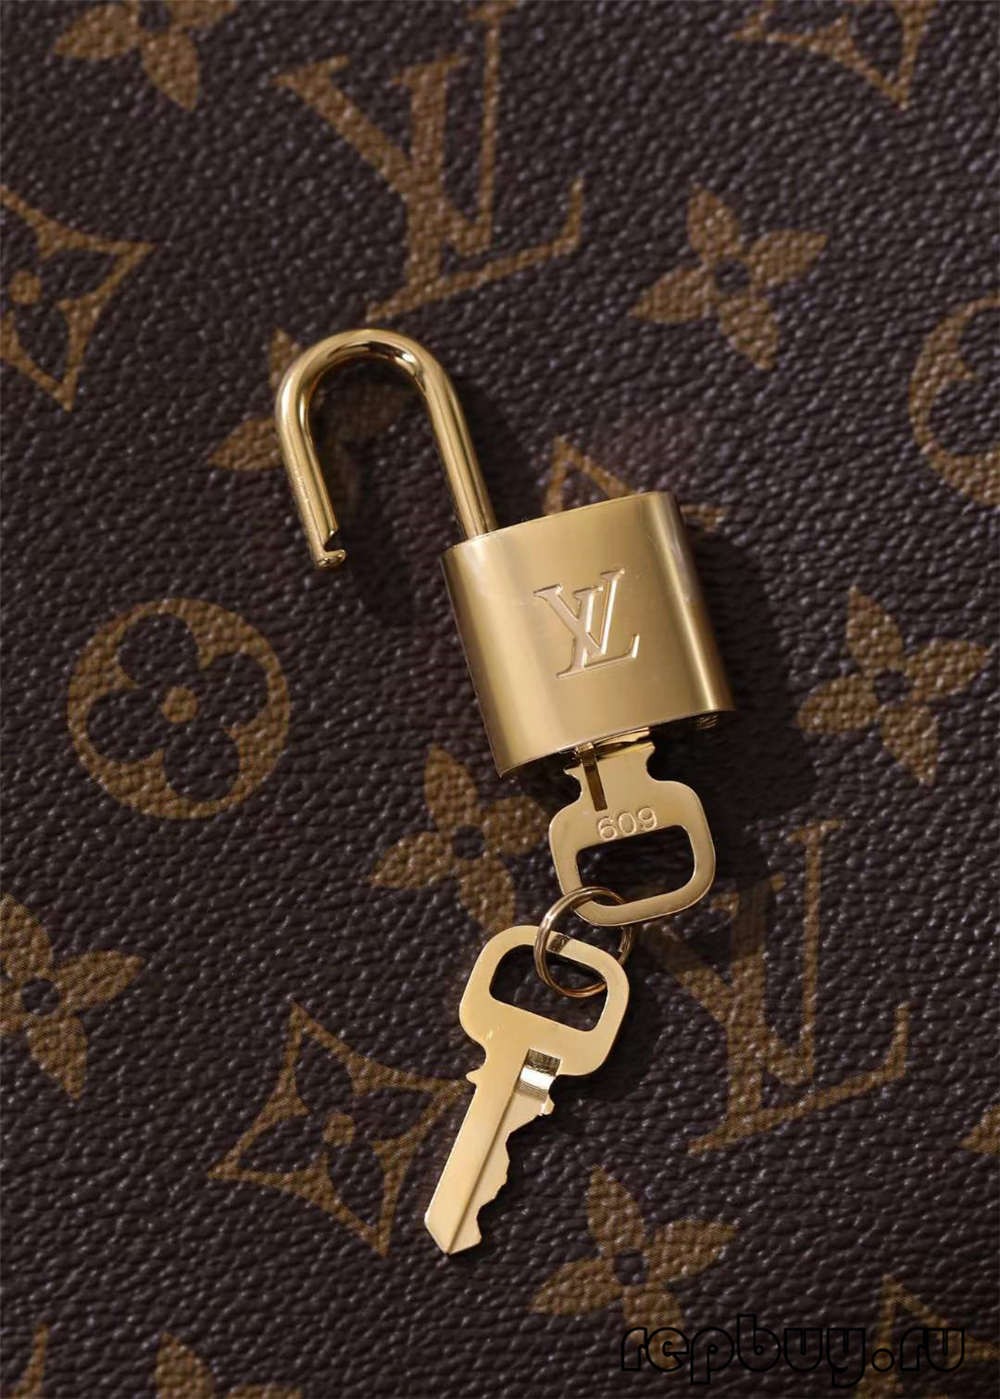 Louis Vuitton M41055 Montaigne BB top replica handbags Closure and hardware details (2022 Edition)-Best Quality Fake designer Bag Review, Replica designer bag ru